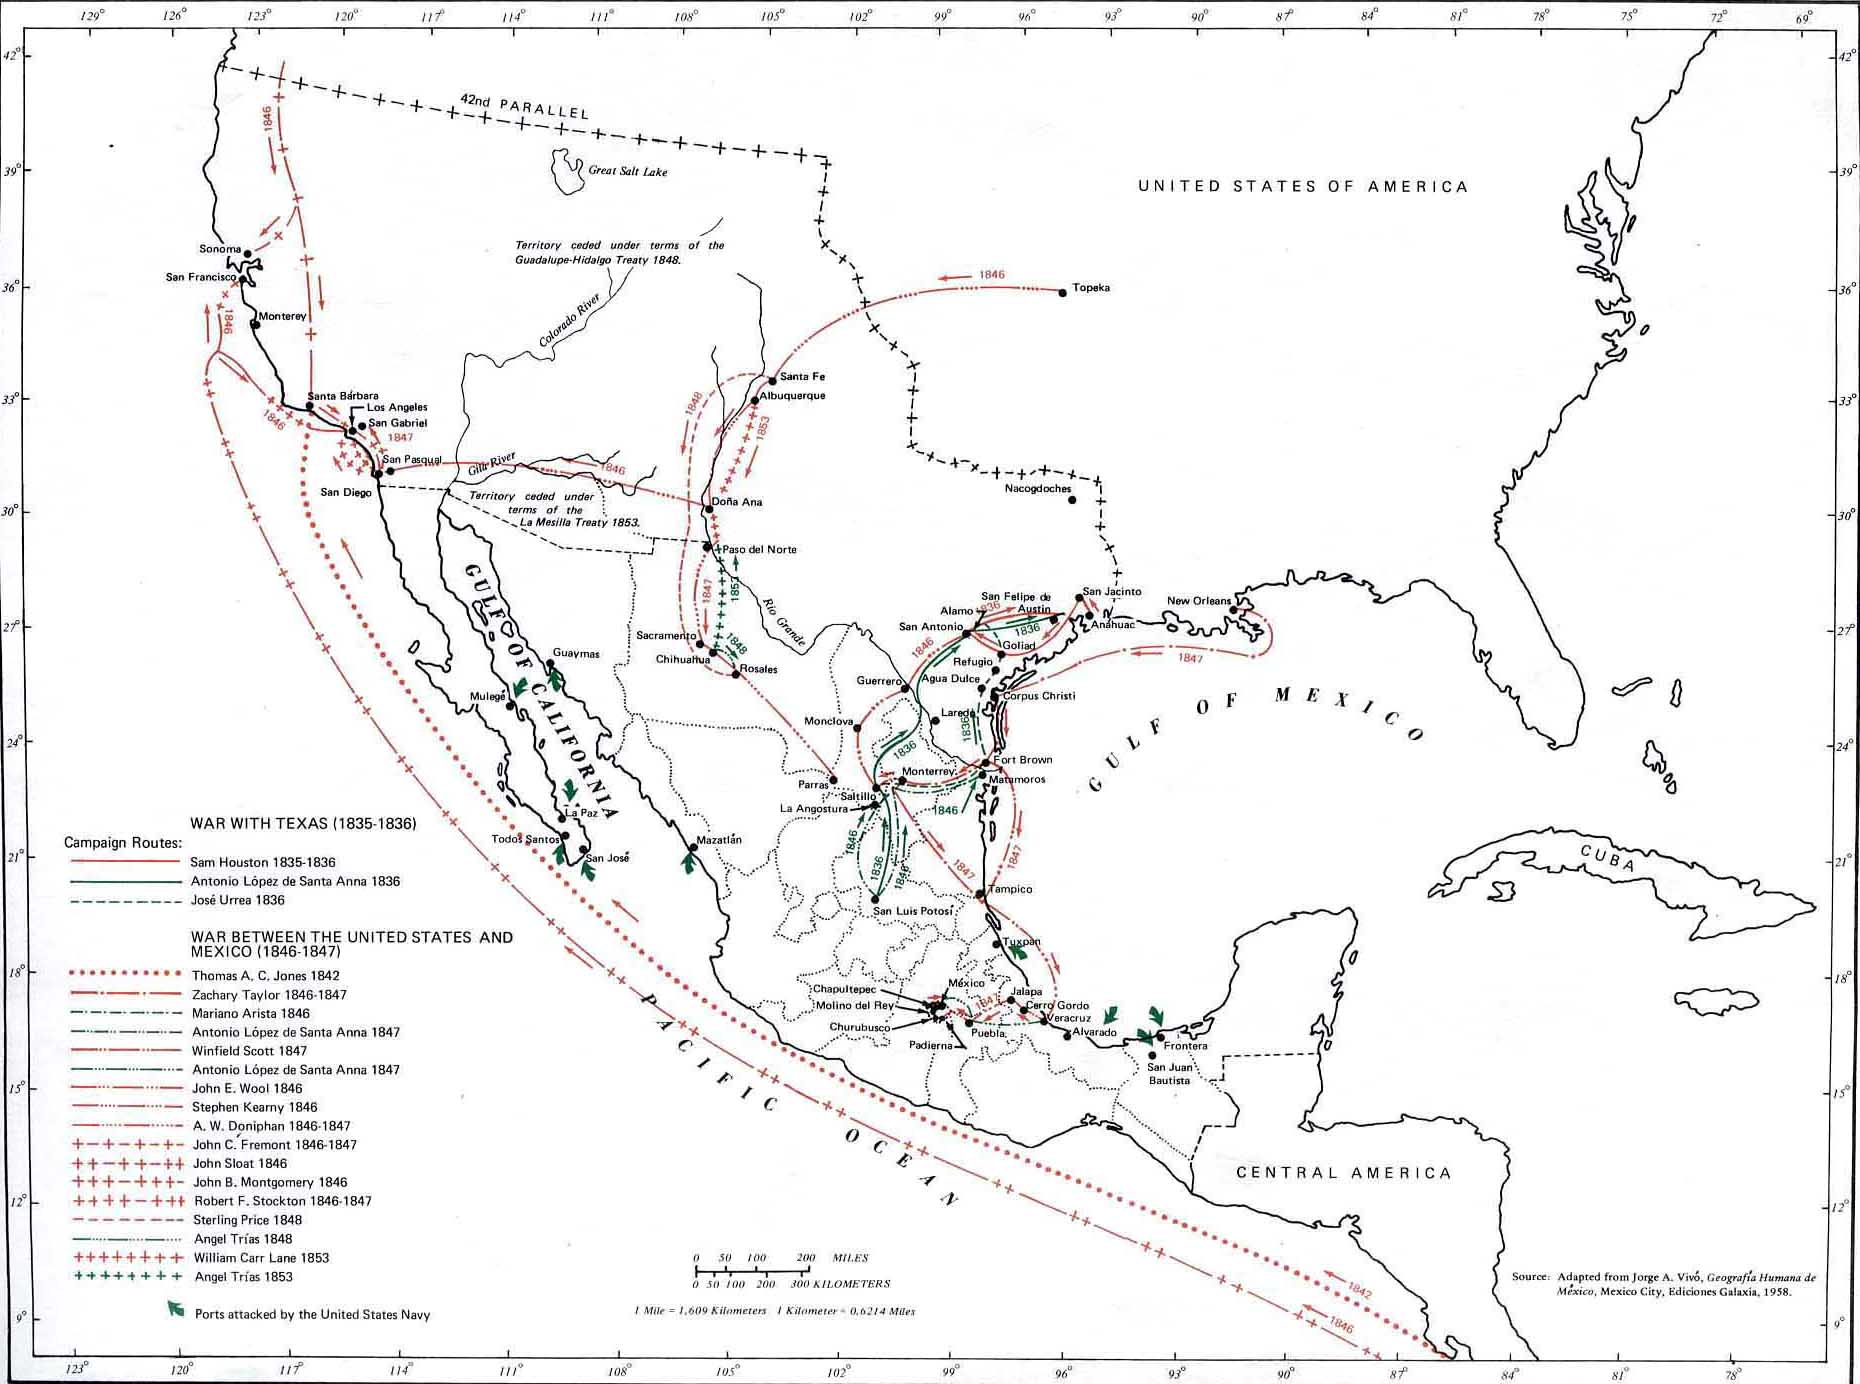 Map of the Campaign Routes: Texas Revolution, Mexican-American War, La Mesilla Treaty